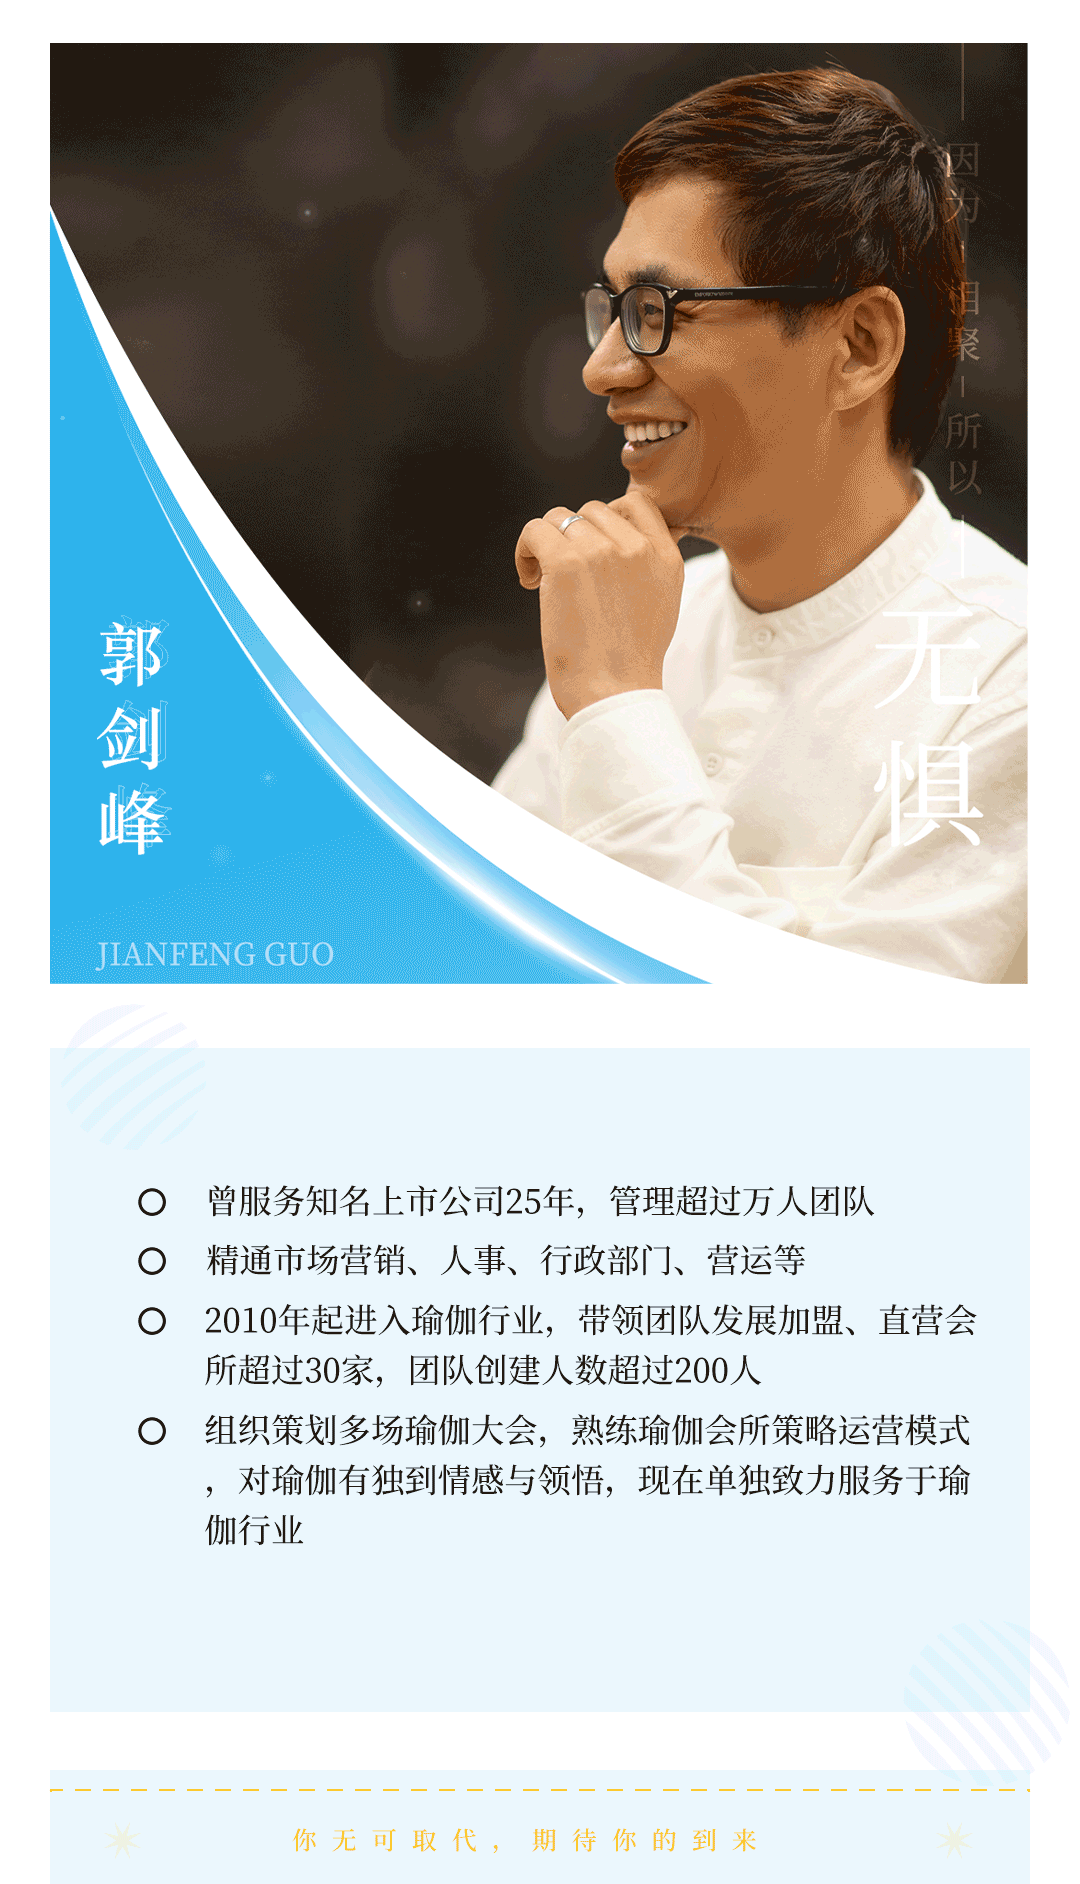 上海国际瑜伽大会导师——郭剑峰